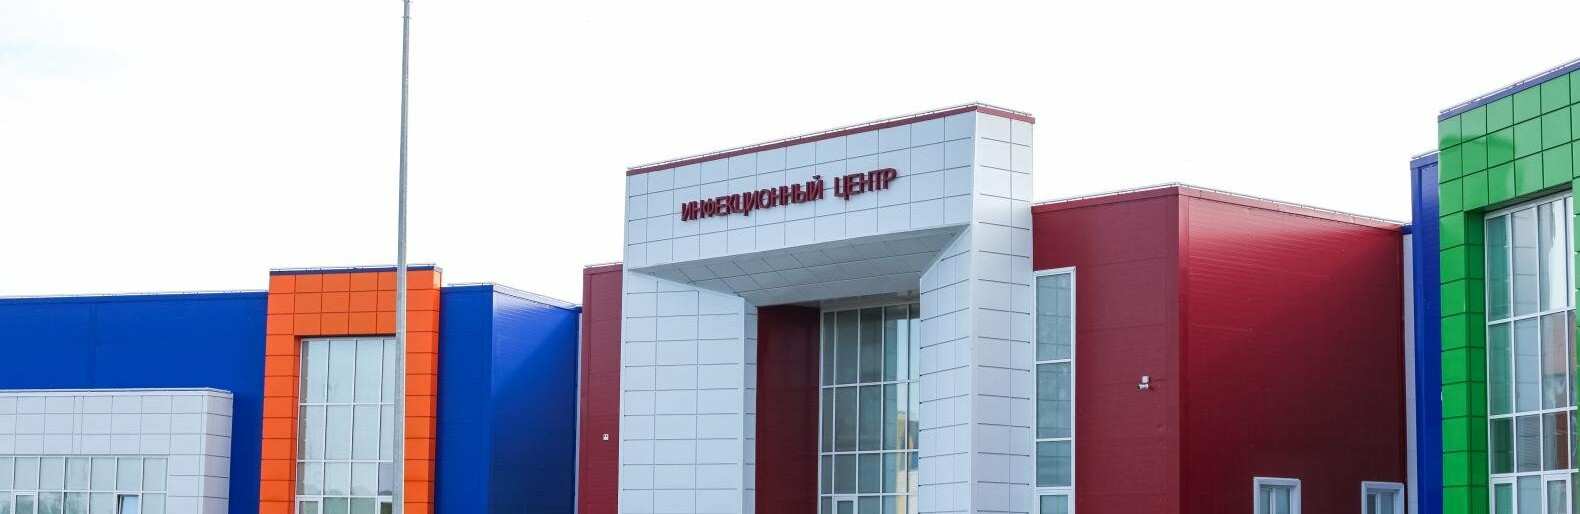 Фоторепортаж из красной зоны нового инфекционного центра под Белгородом